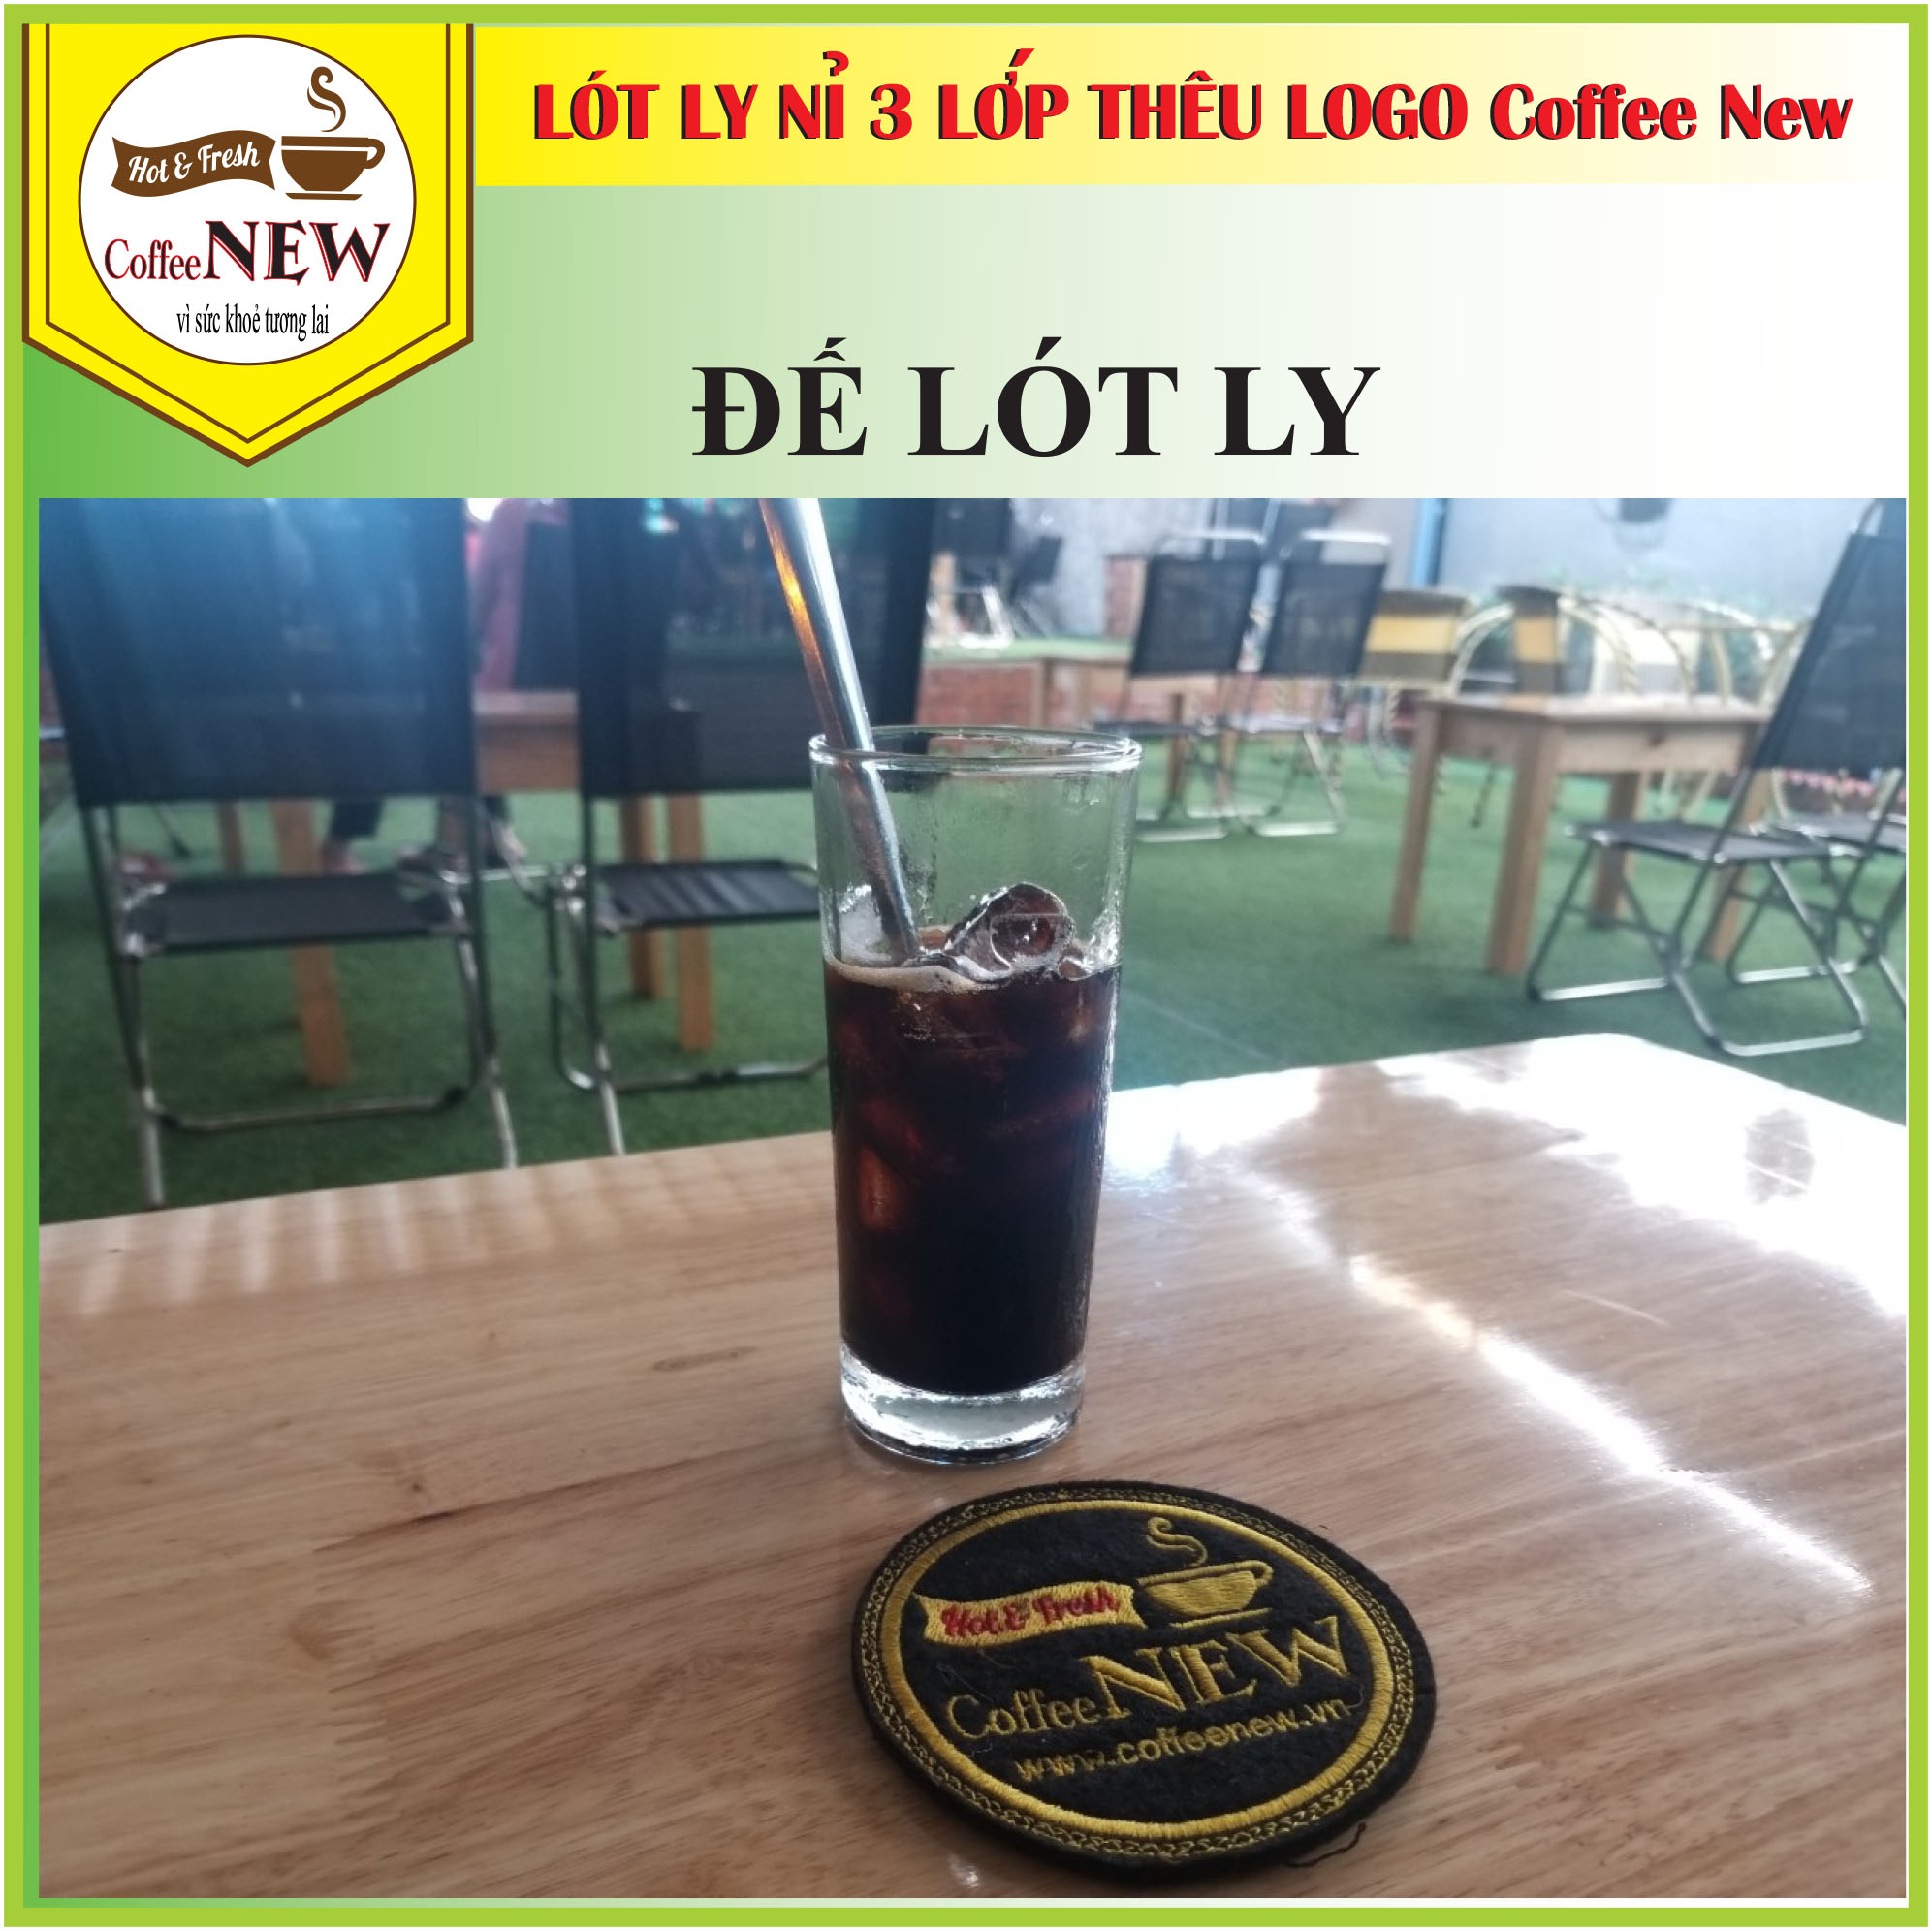 COMBO 10 Cái Đế Lót Ly (Nỉ 3 Lớp Cao Cấp) Thêu Logo Nổi Coffee New - Đường kính 9cm - Thấm nước nhanh - Nhỏ, gọn, Đẹp_Coffee New